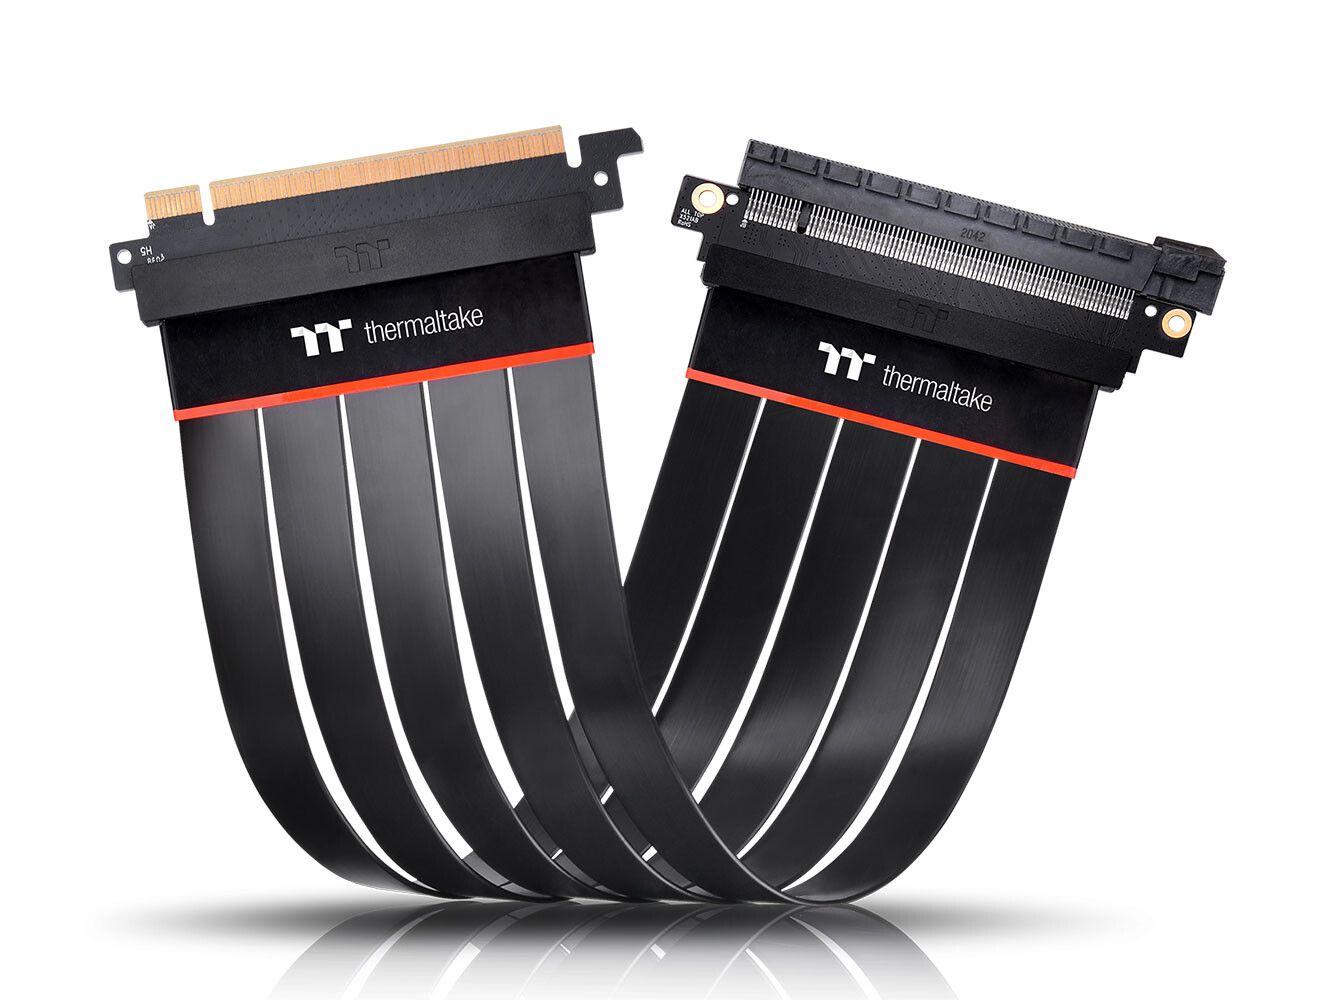 Thermaltake ra mắt dây nối dài PCIe 4.0 cao cấp với thiết kế chống nhiễu